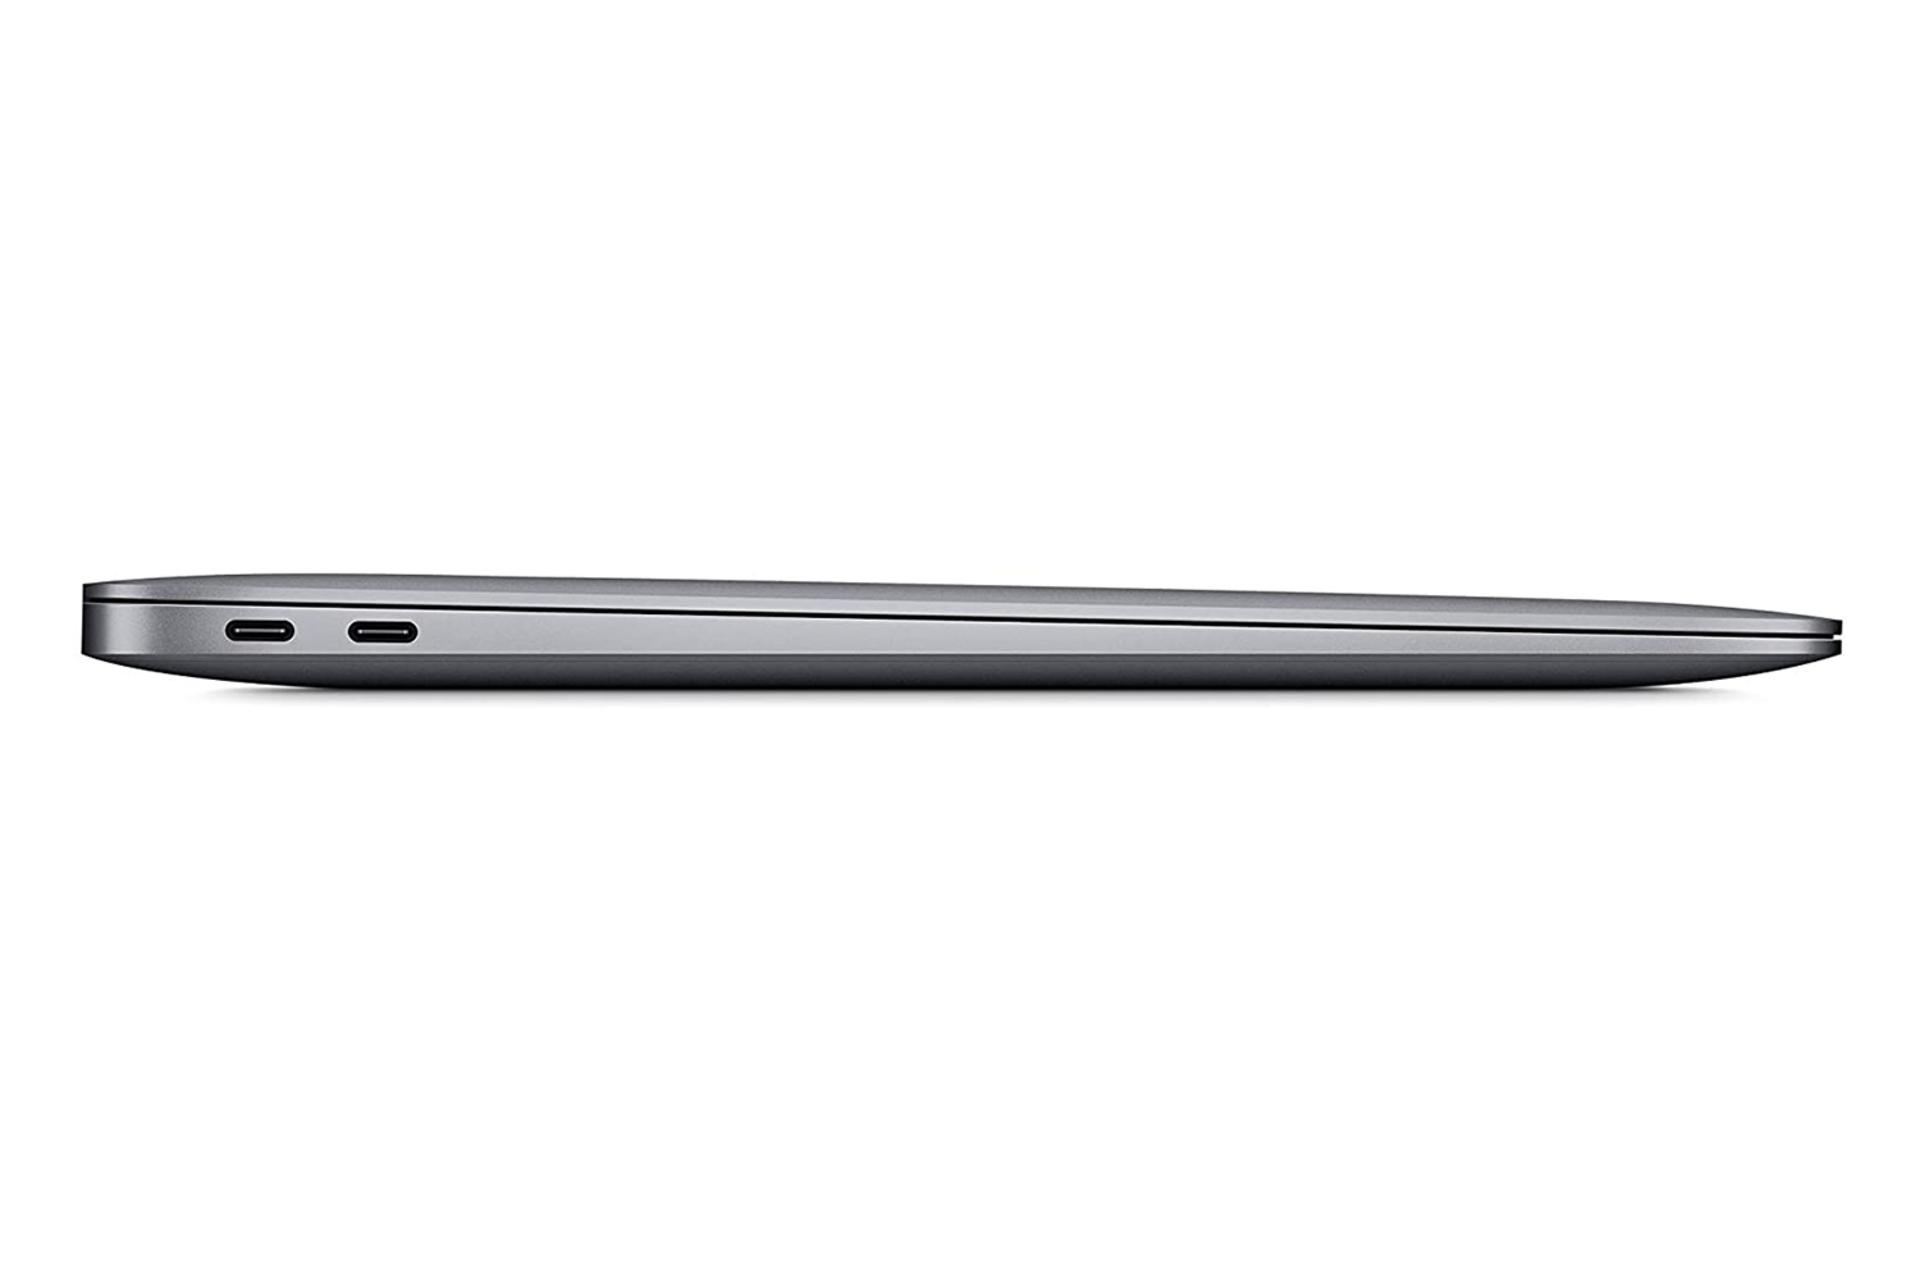 لپ تاپ مک بوک ایر 13 اینچی 2020 اپل / Apple MacBook Air 13 2020 / پورت ها